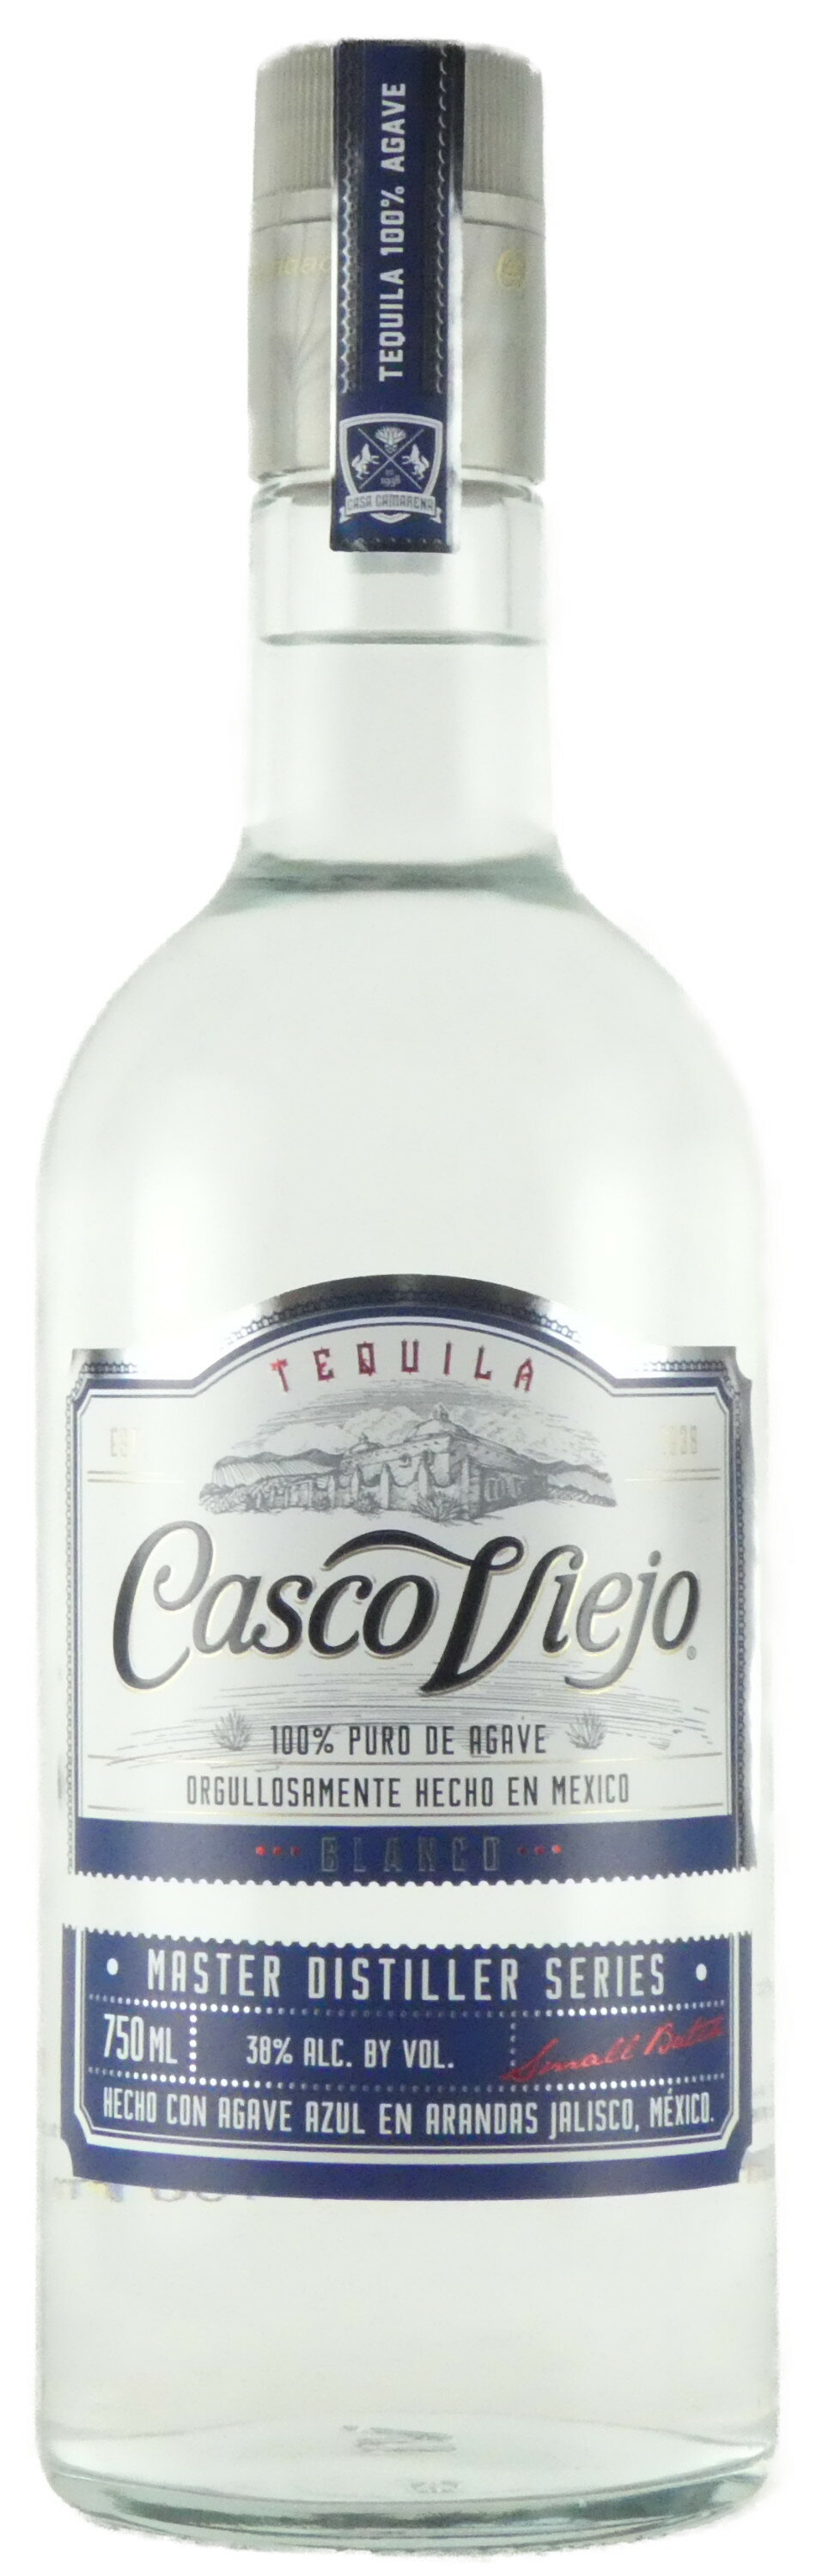 【楽天倉庫出荷(楽天スーパーロジスティクス)】 カスコ ヴィエホ ブランコ テキーラ 750ml メキシコ Casco Viejo Blanco Tequila